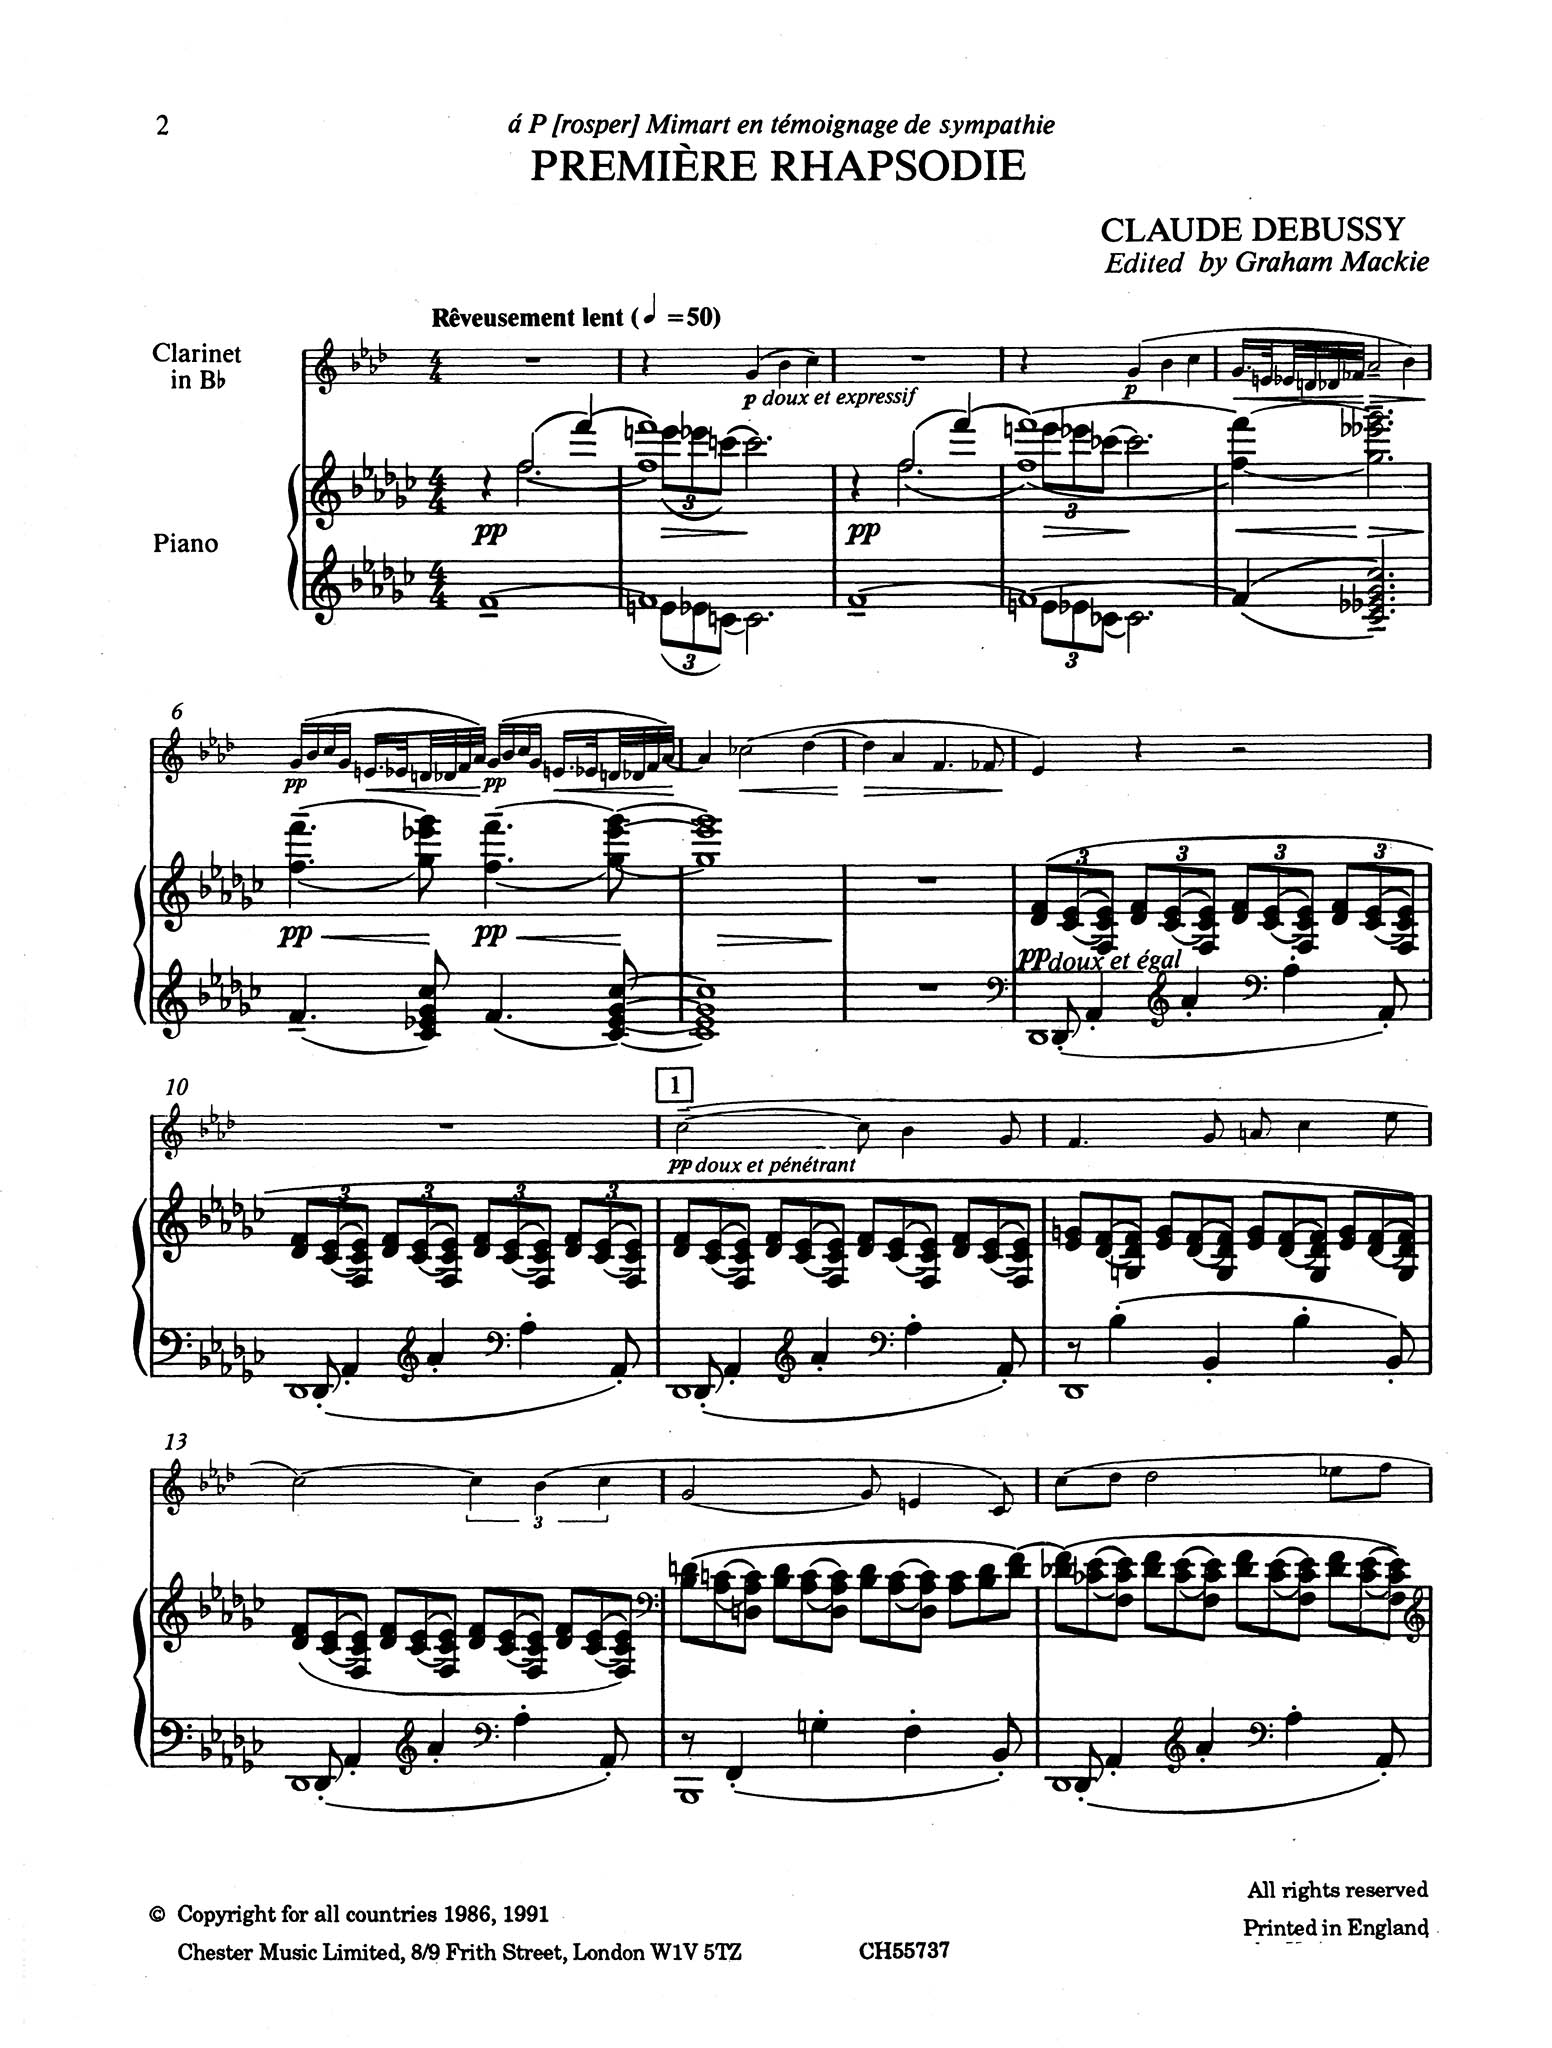 Première rhapsodie Score